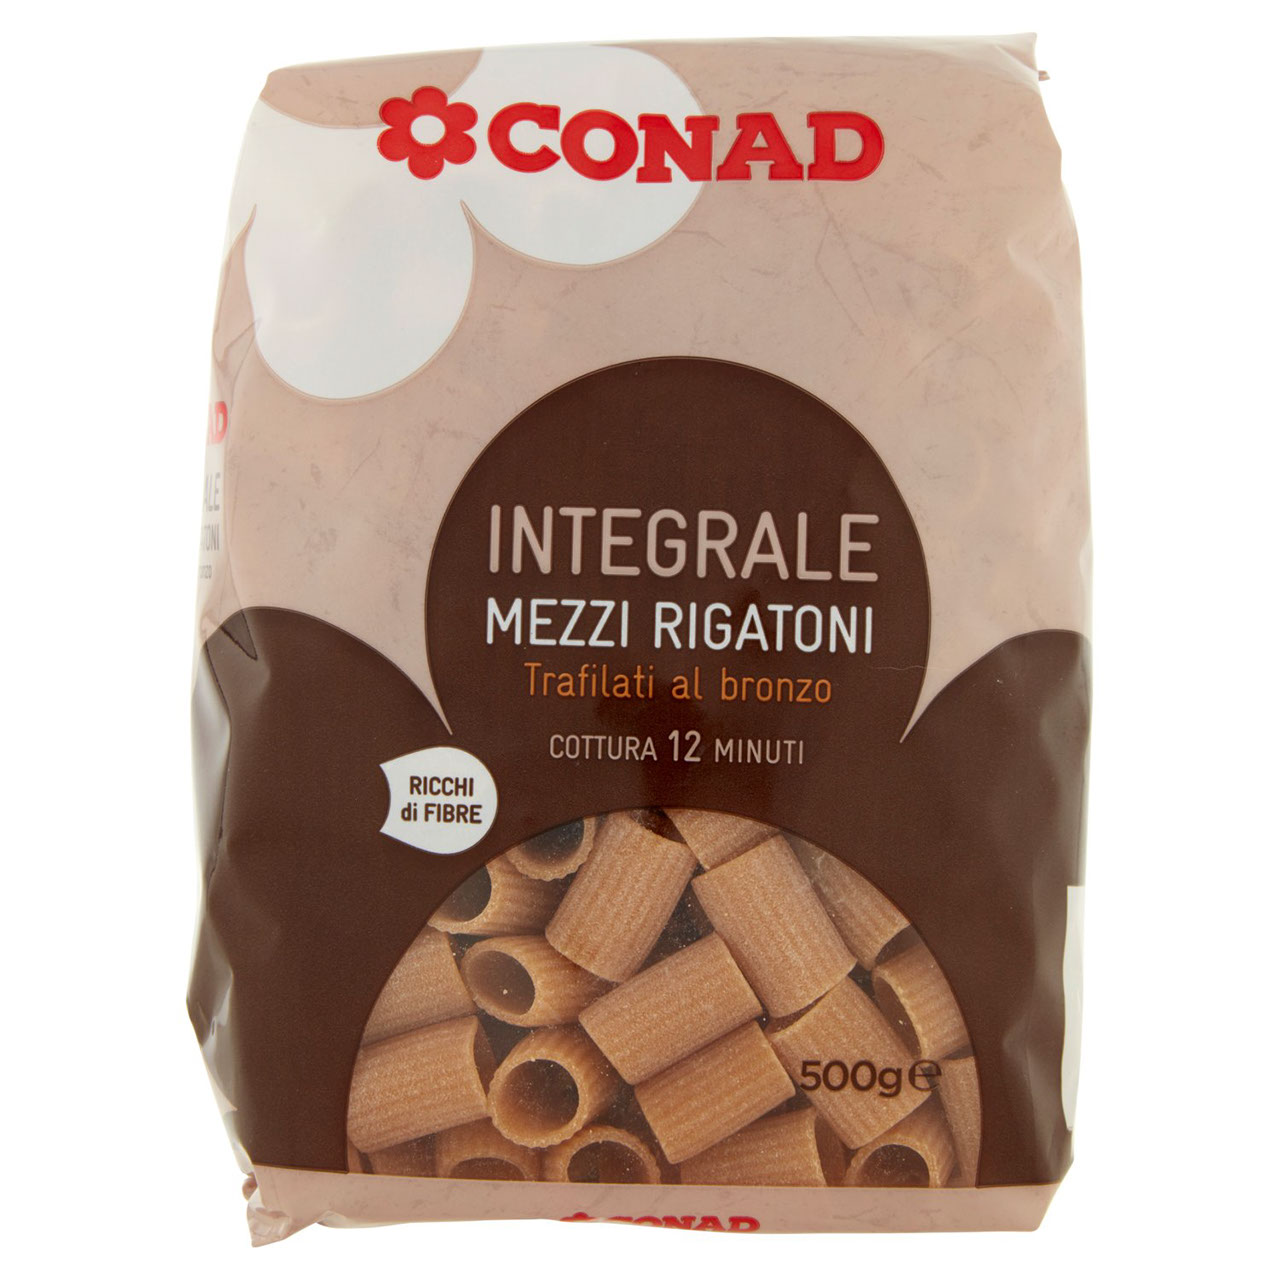 Integrale Mezzi Rigatoni 500 g Conad online